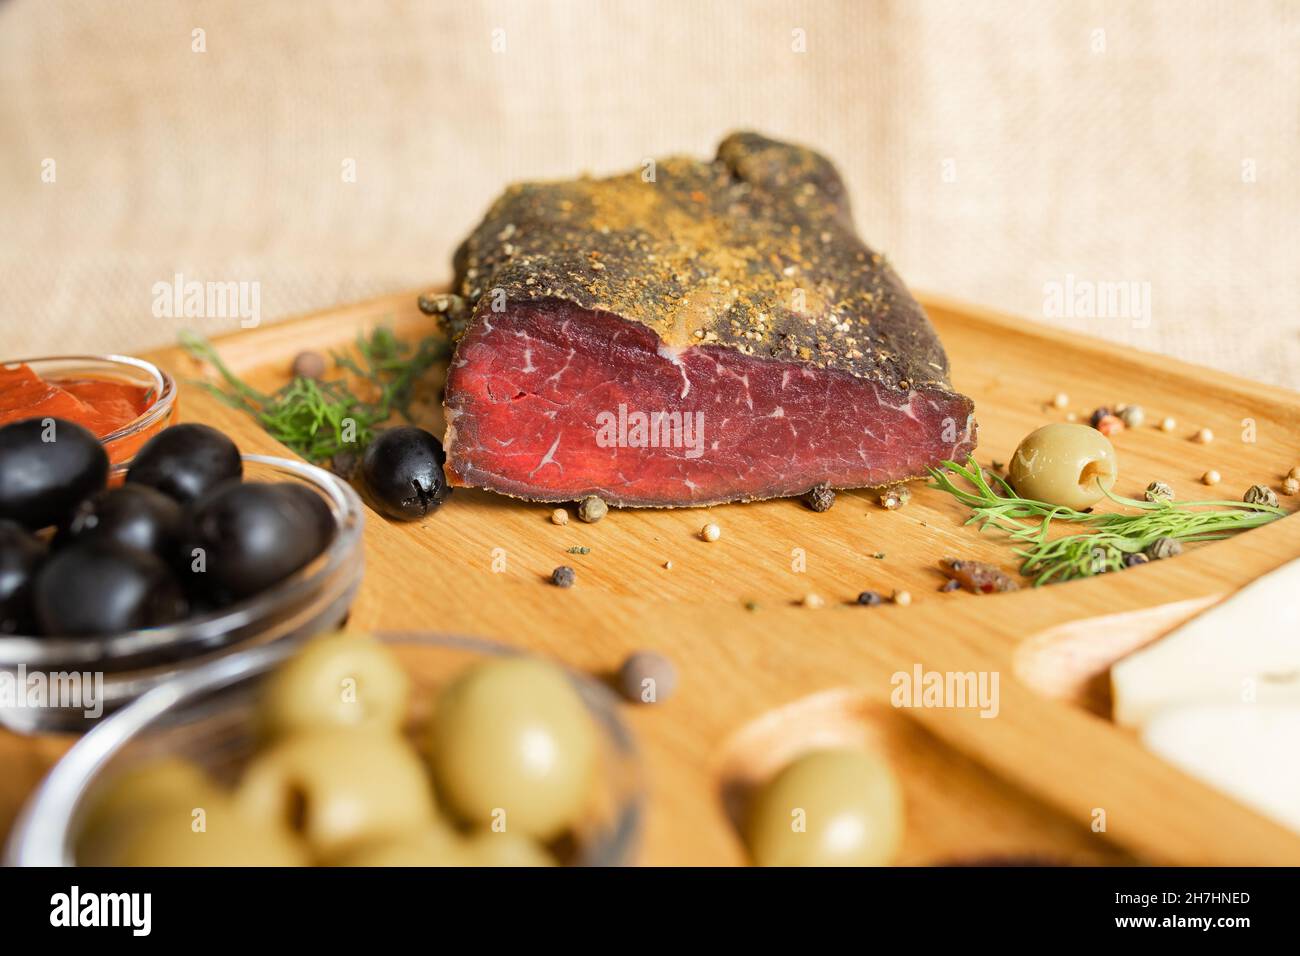 Filetto secco di carne di manzo, tagliato a fette sottili, sul piatto di legno con formaggio, olive, pepe nero, salsa di pomodoro. Antipasto con filetto a scatto Foto Stock